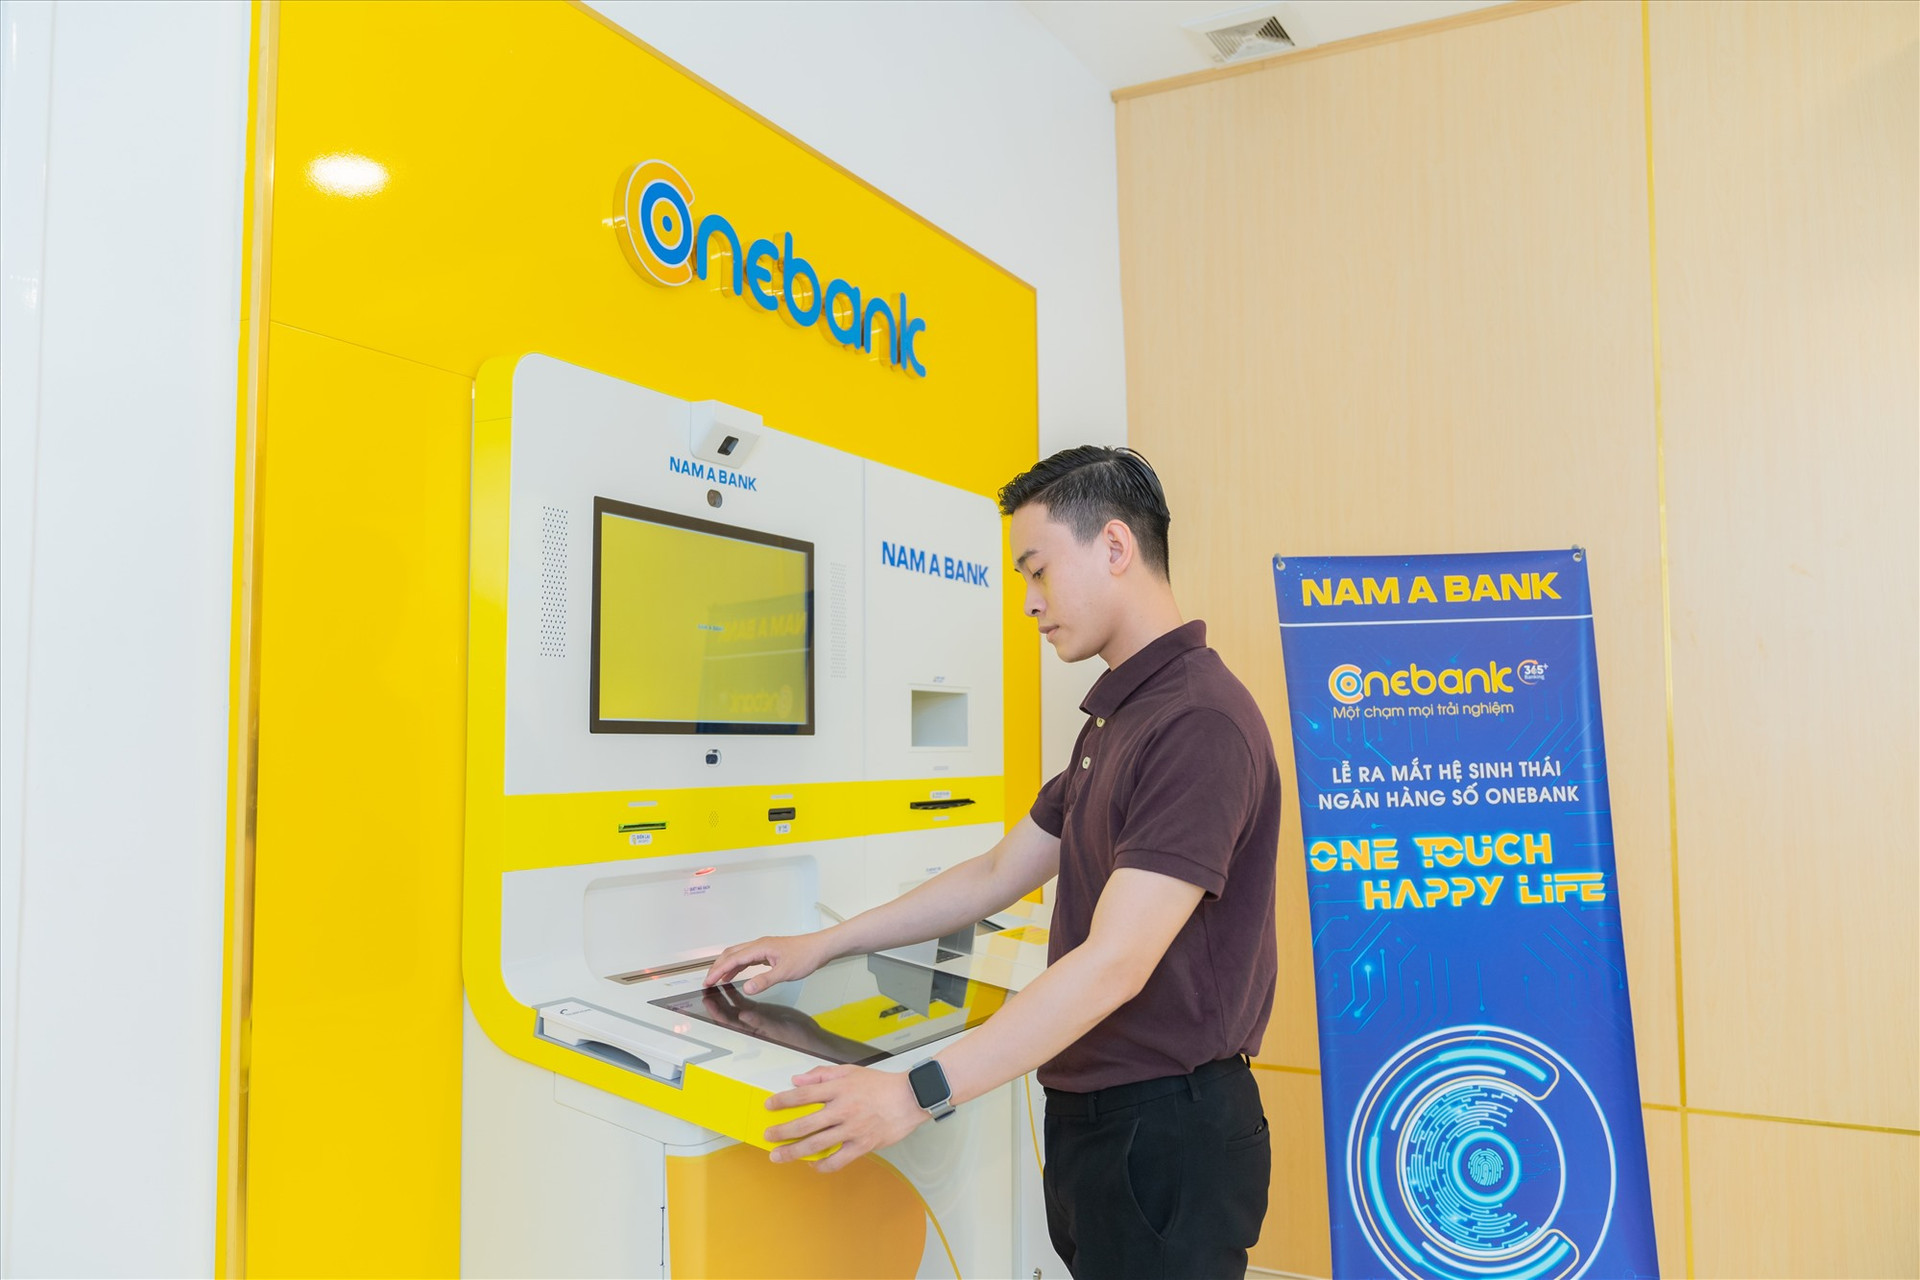 ONEBANK mang đến những trải nghiệm vượt trội cho khách hàng.